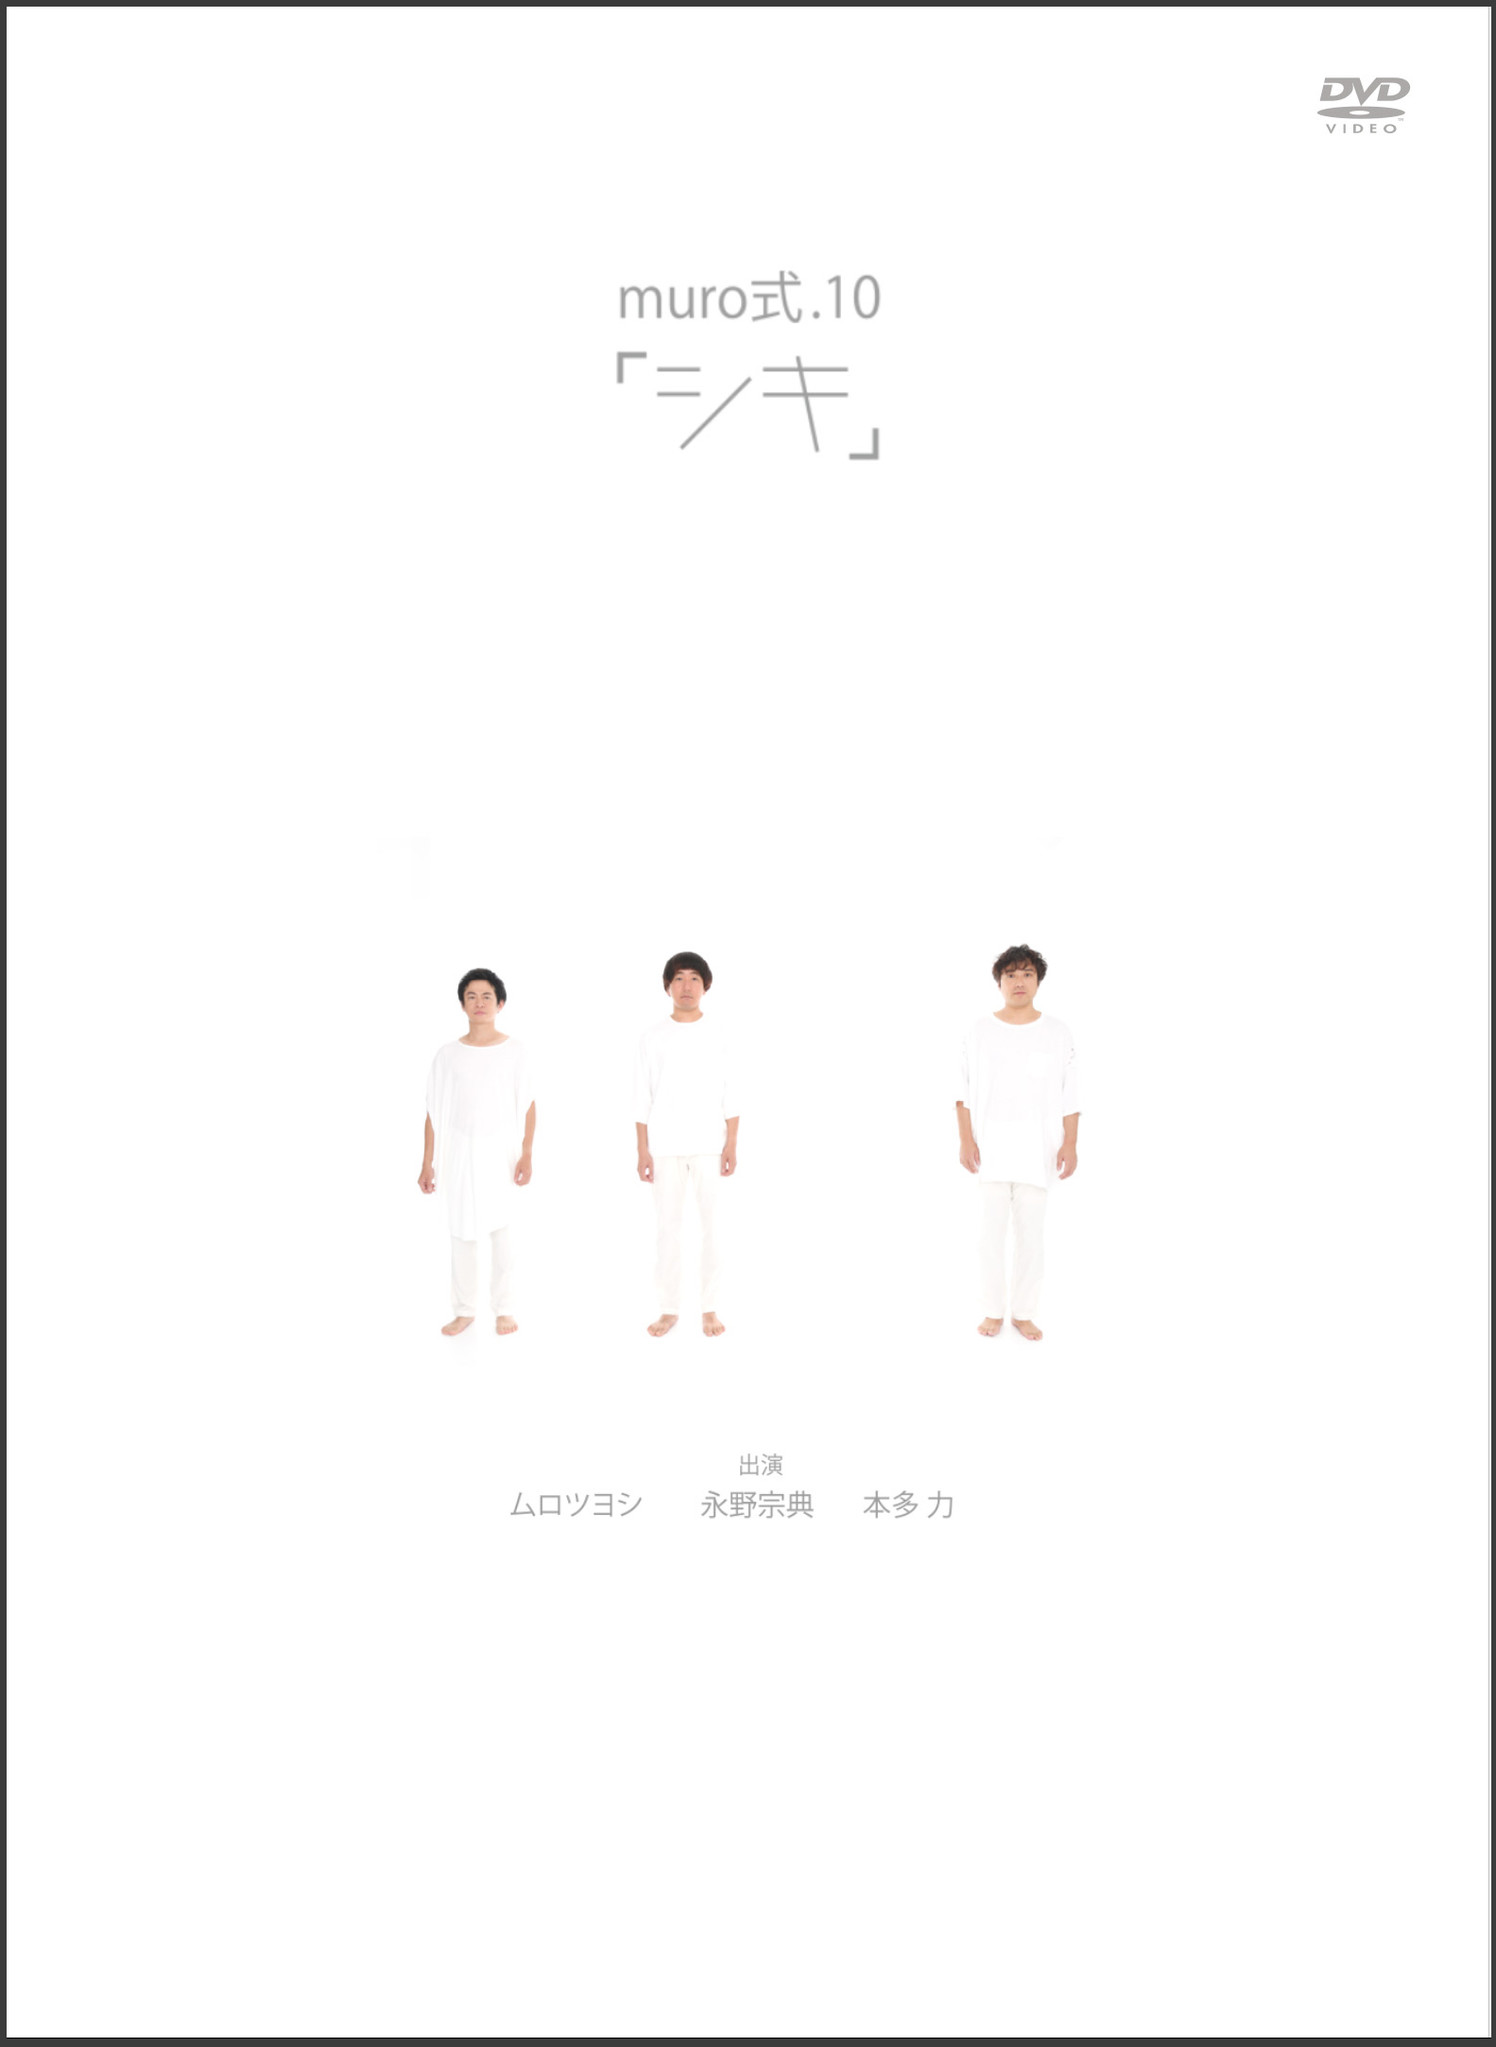 ムロツヨシの大人気舞台 Muro式 集大成の10年目公演 Muro式 10 シキ Dvd が19年2月2日リリース 株式会社ハピネットのプレスリリース